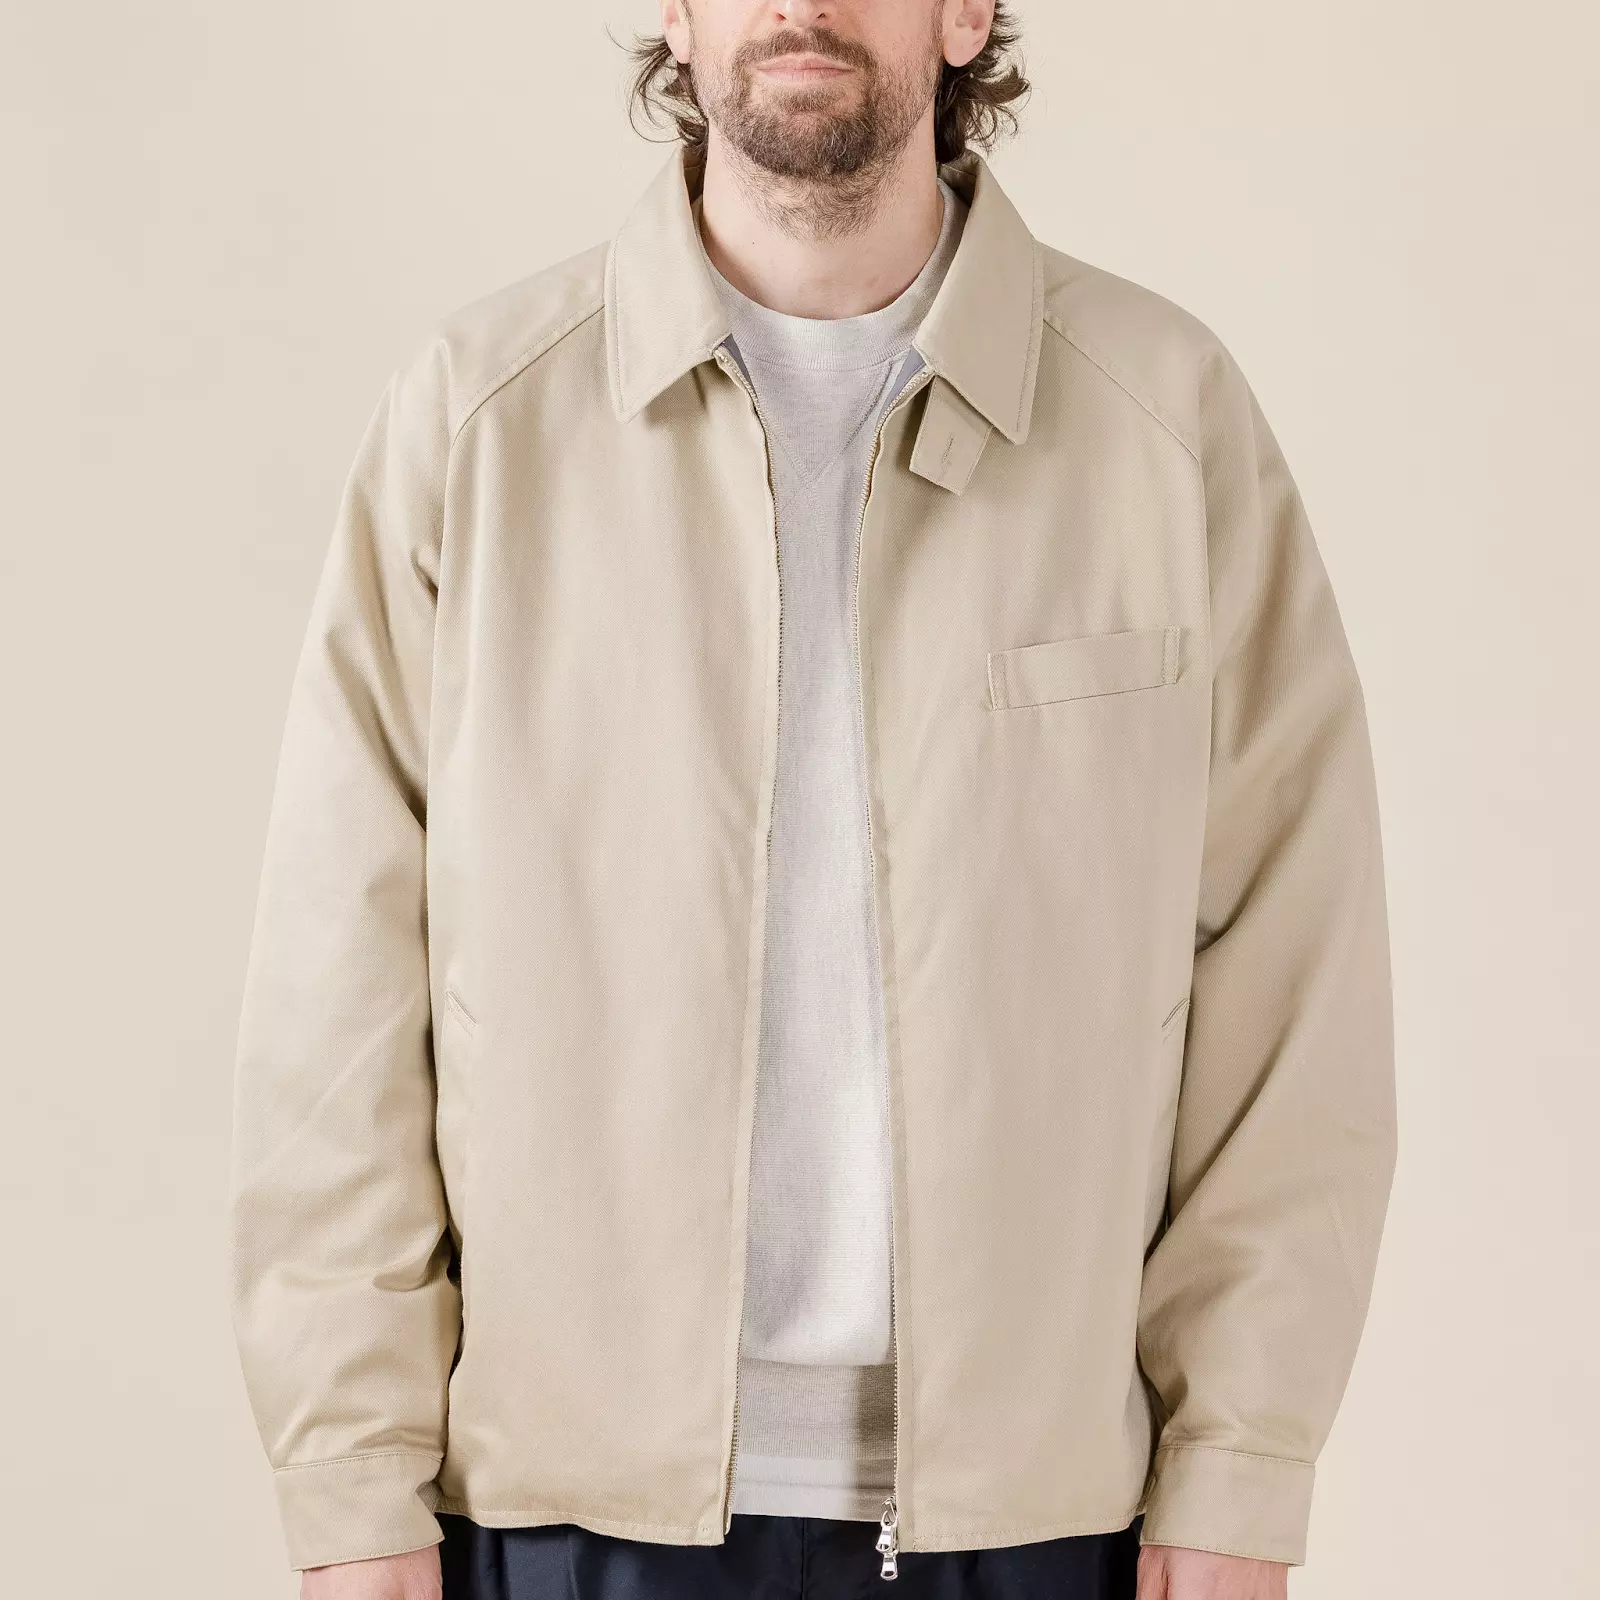 5+ thương hiệu áo khoác jacket đẹp mà bạn không nên bỏ lỡ!